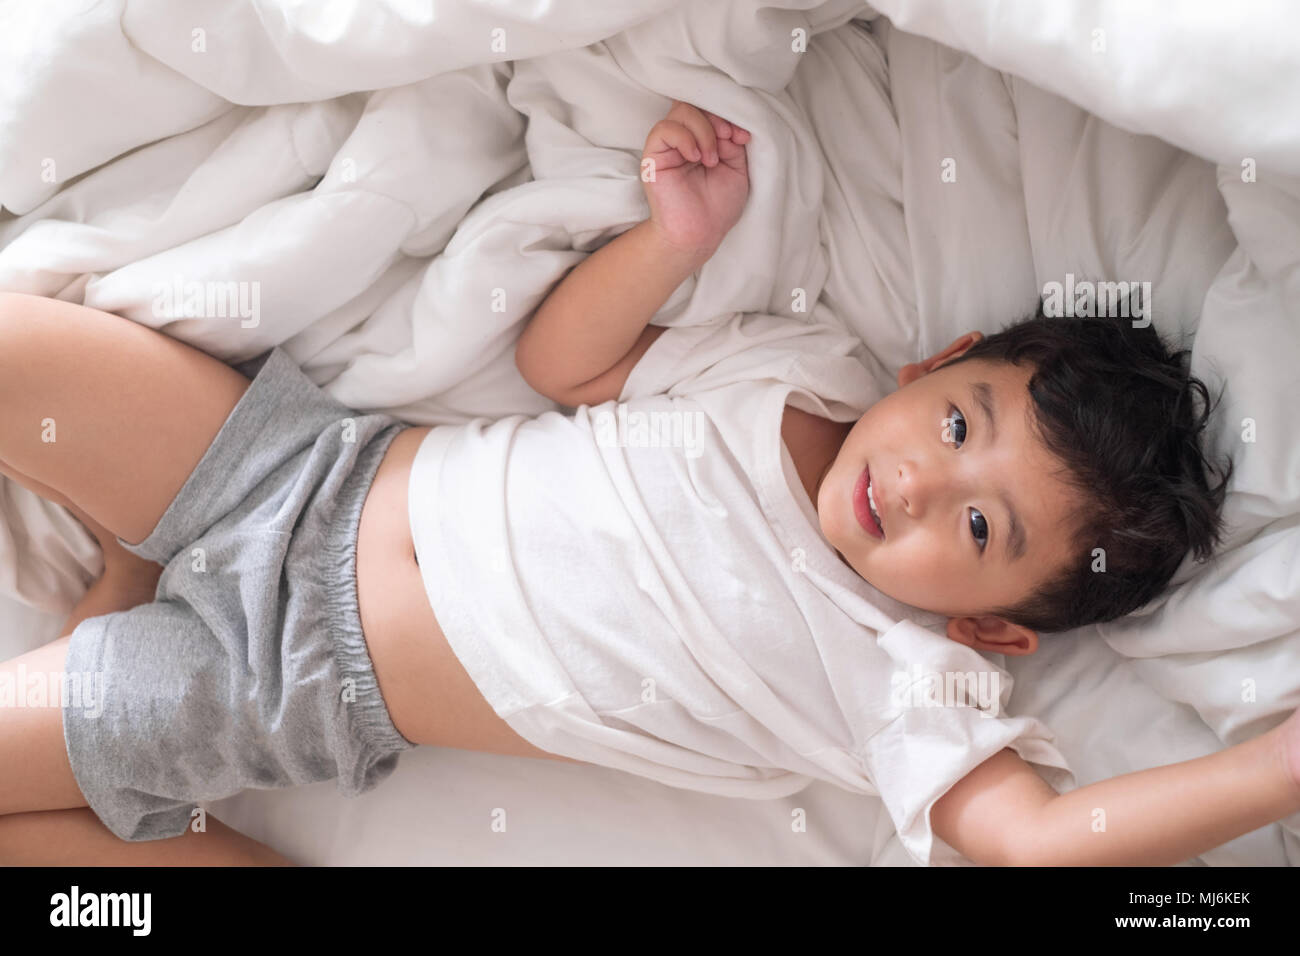 Мальчики 12 лет спят. Кровать для детей. Азиатский мальчик на кровати. Кровать для мальчика.